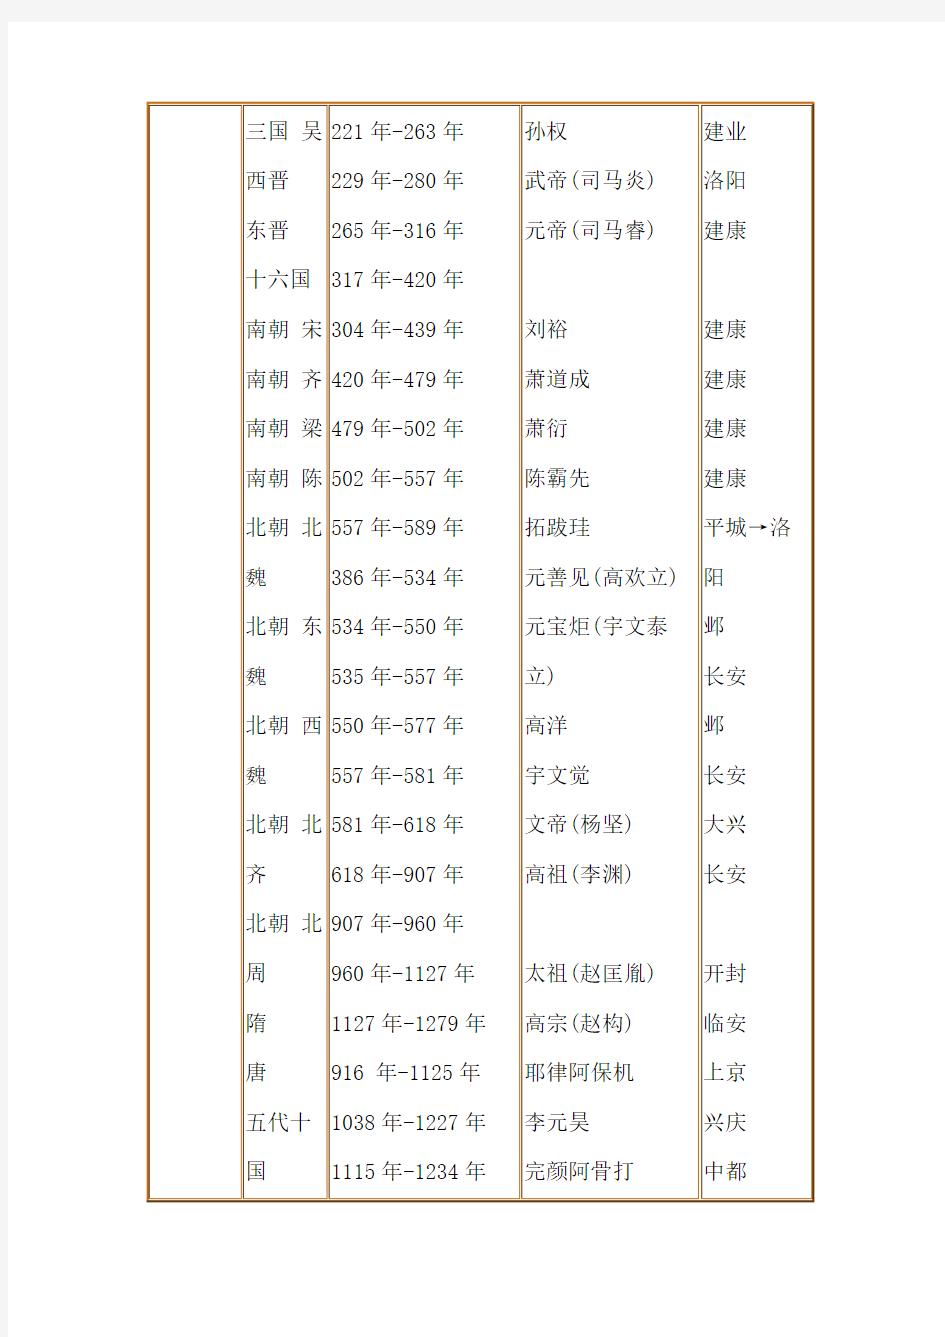 中国历史纪年表(最详细版)汇总